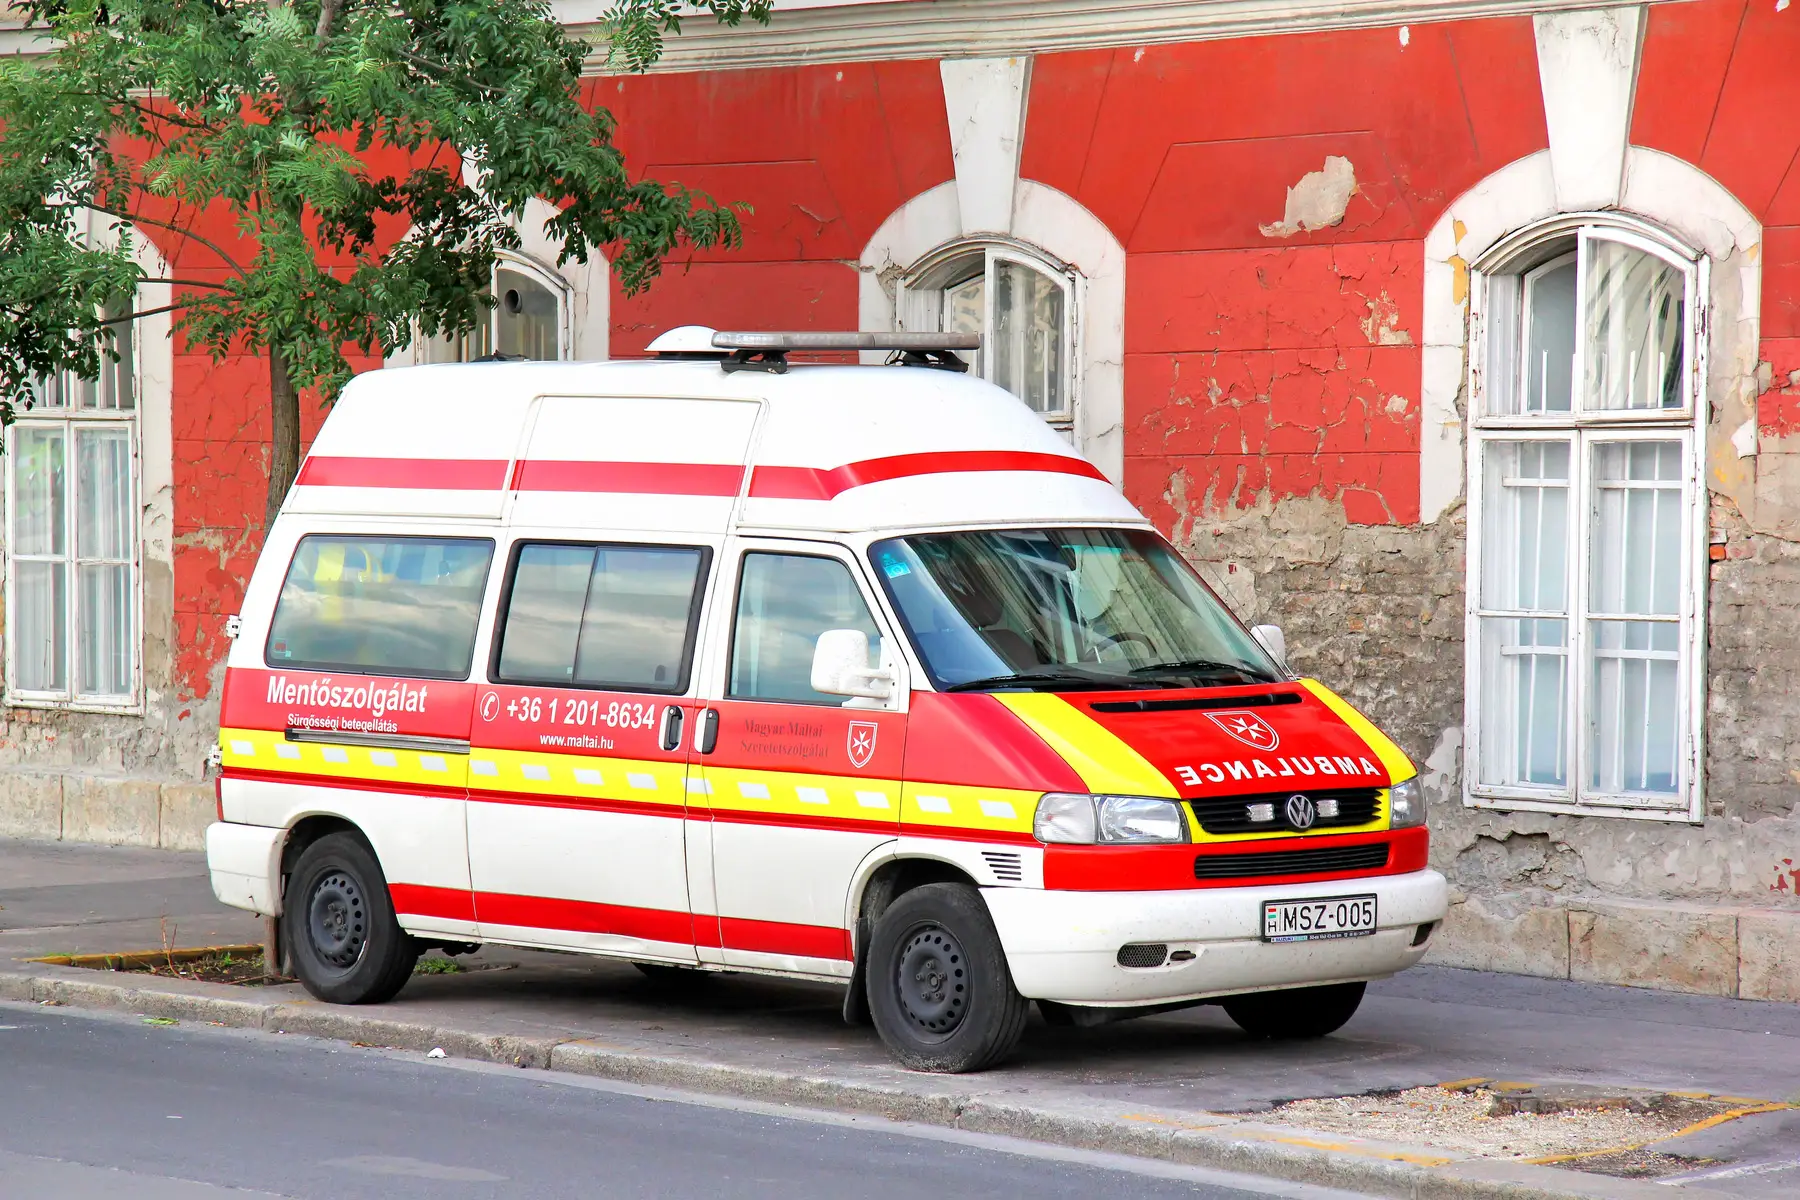 A Hungarian ambulance